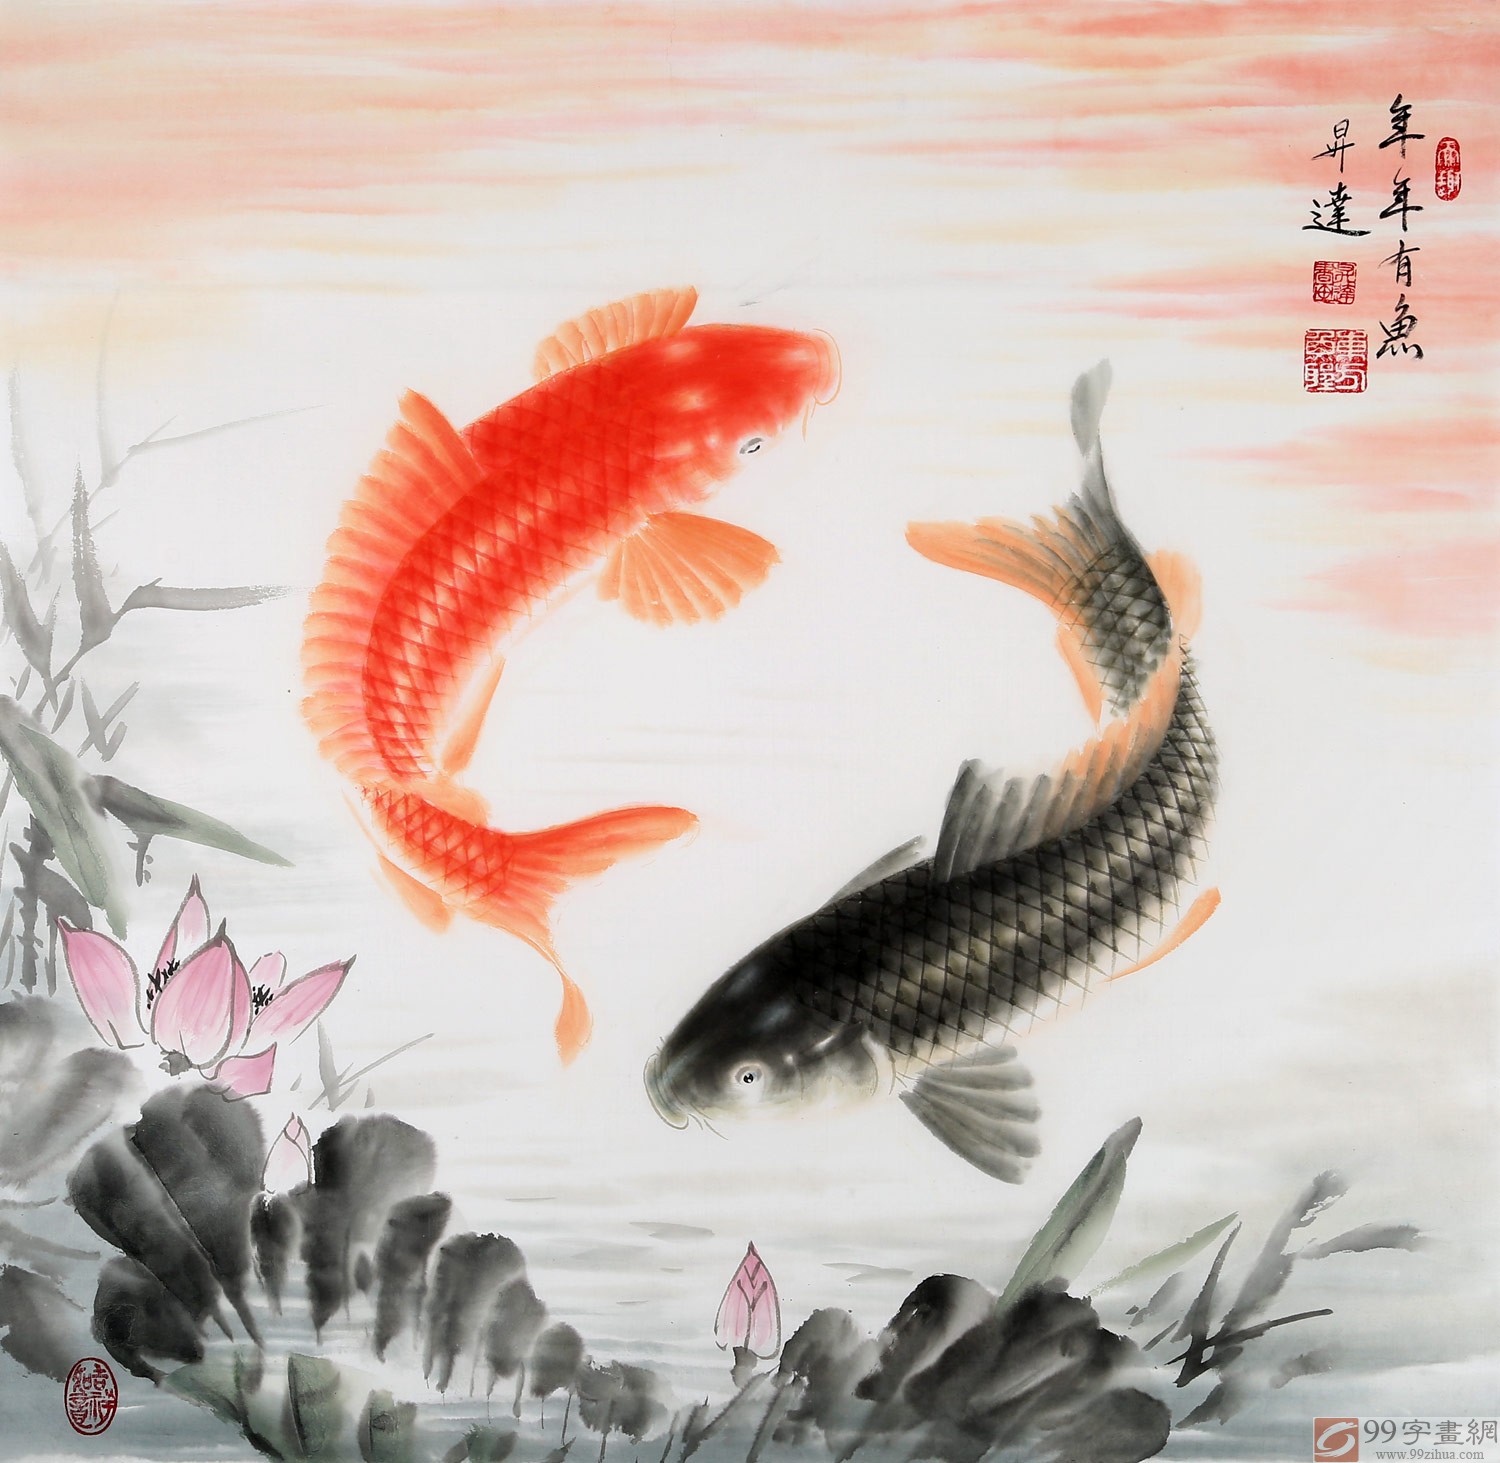 中国画院周升达 四尺斗方《年年有鱼》 - 九鱼图 - 99字画网